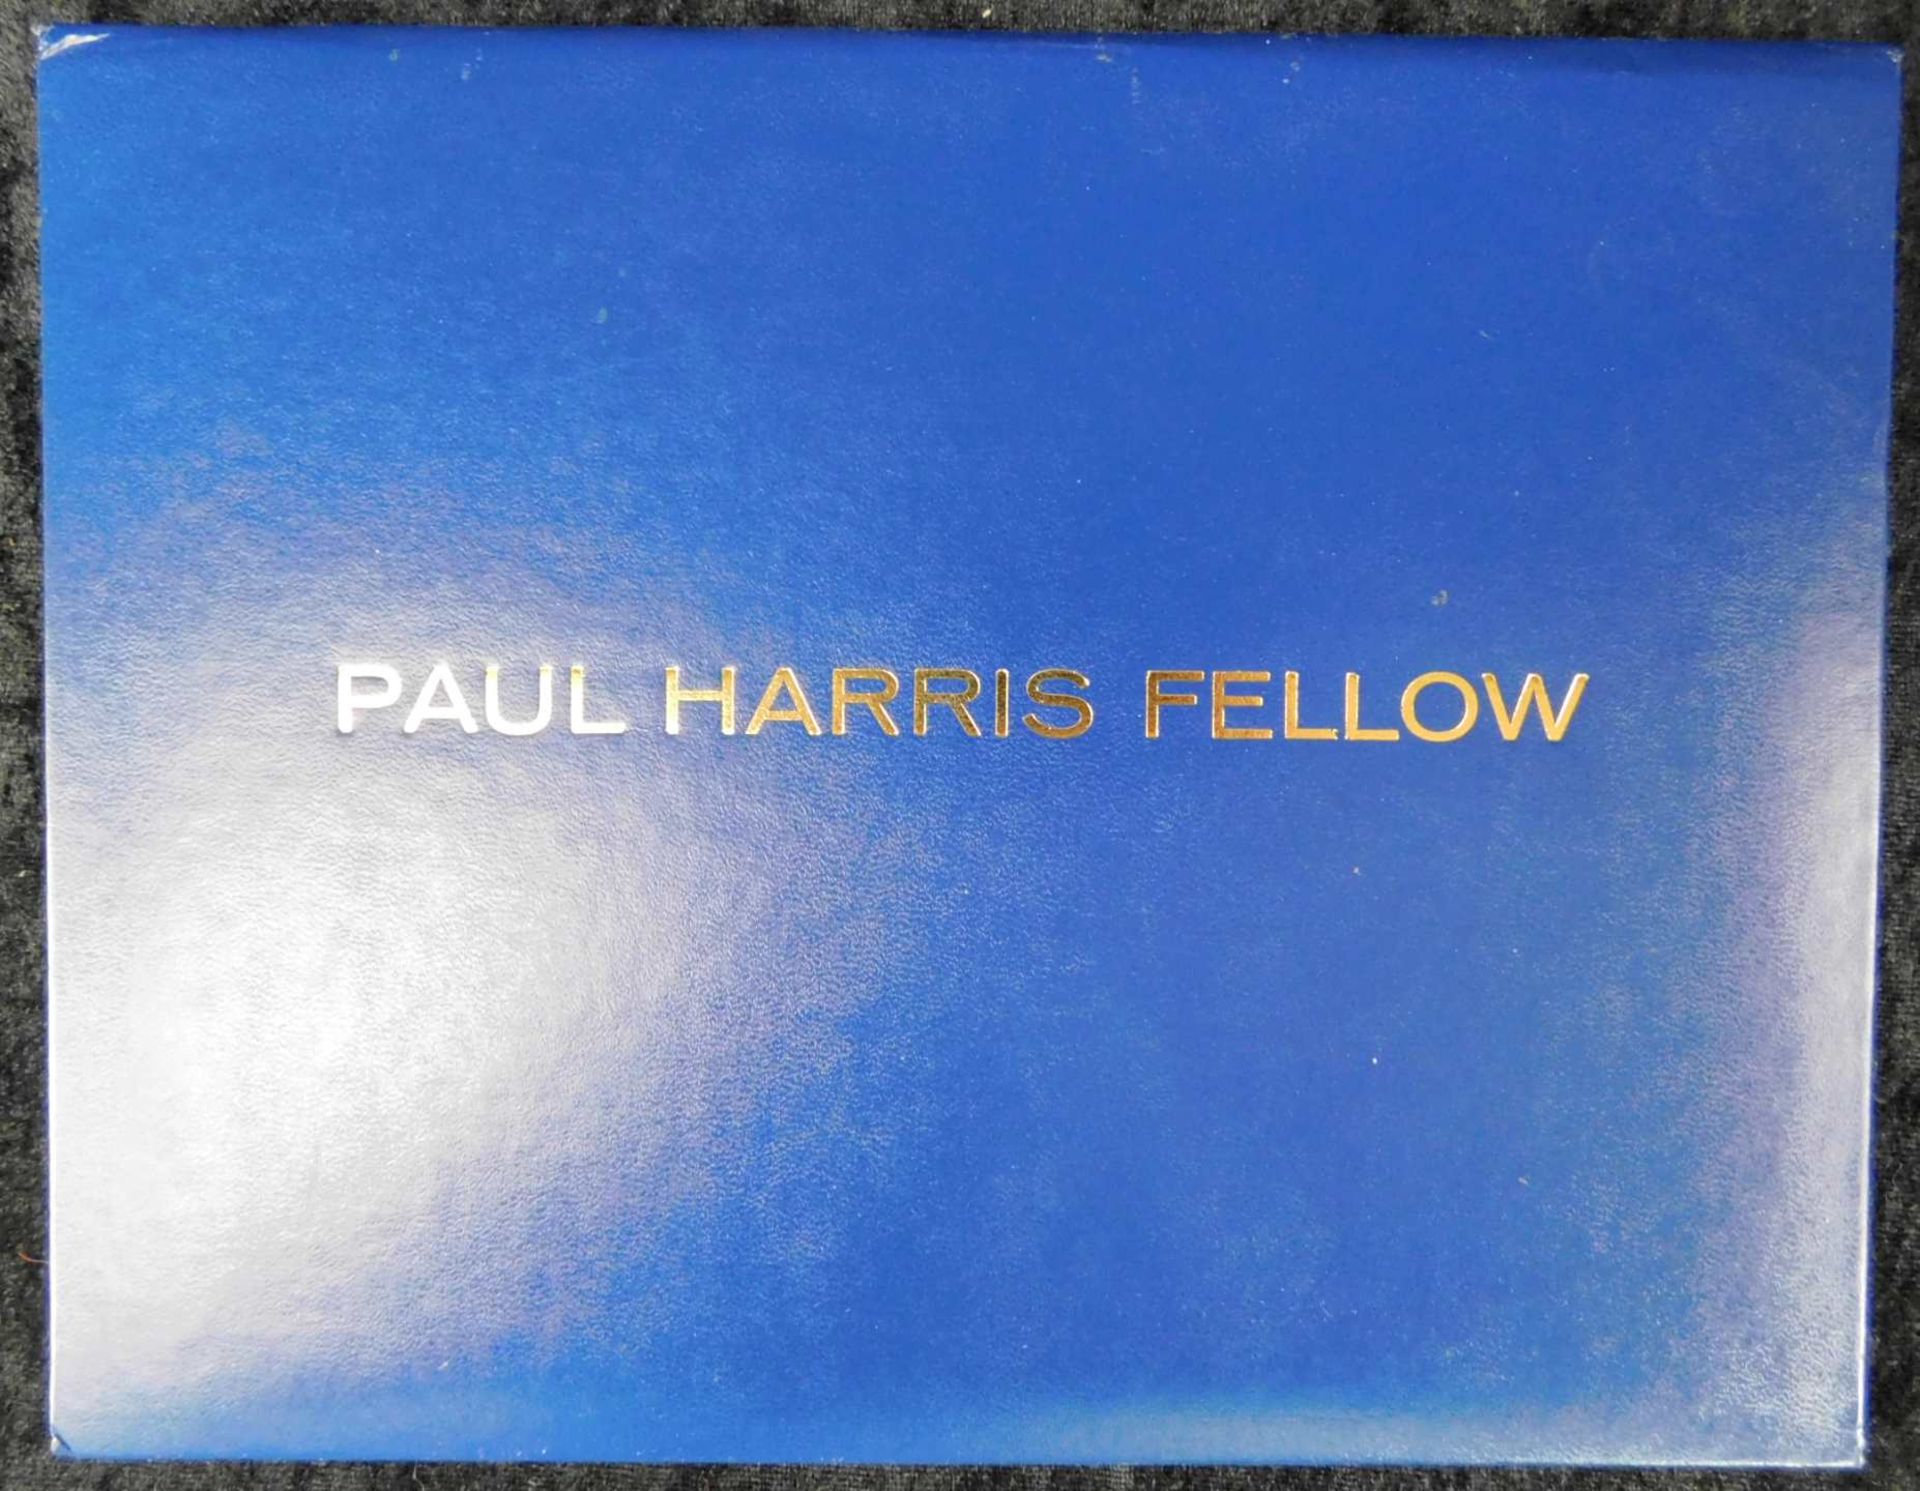 Rotary International Club Medaillien i. Verleihungsschatulle plus Album, Inschrift Paul Harris F - Bild 2 aus 5